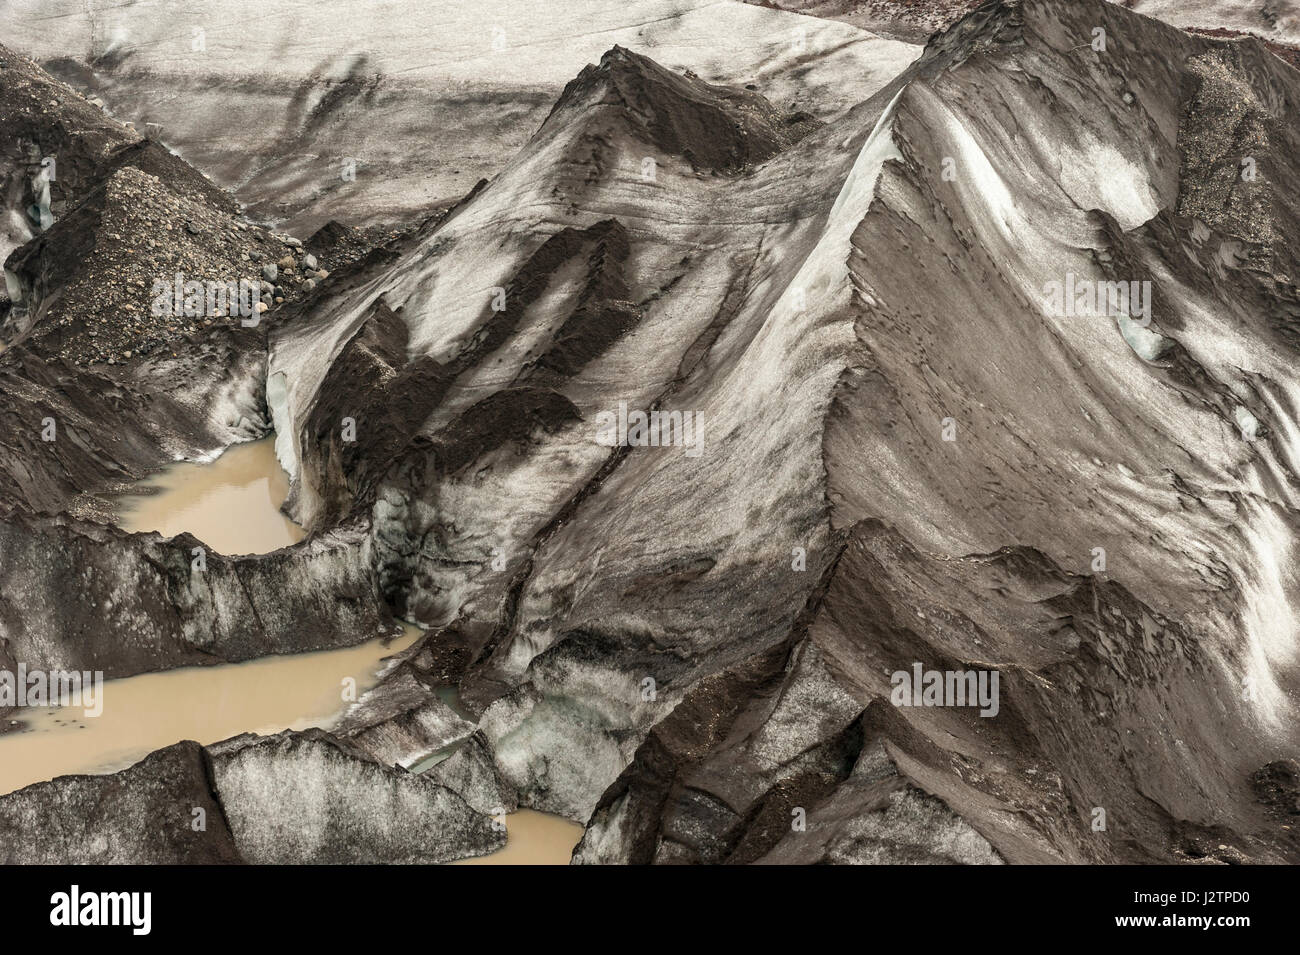 Close-up view of Svínafellsjökull Glacier, glacier tongue, outlet glacier of Vatnajokull, Iceland. Stock Photo